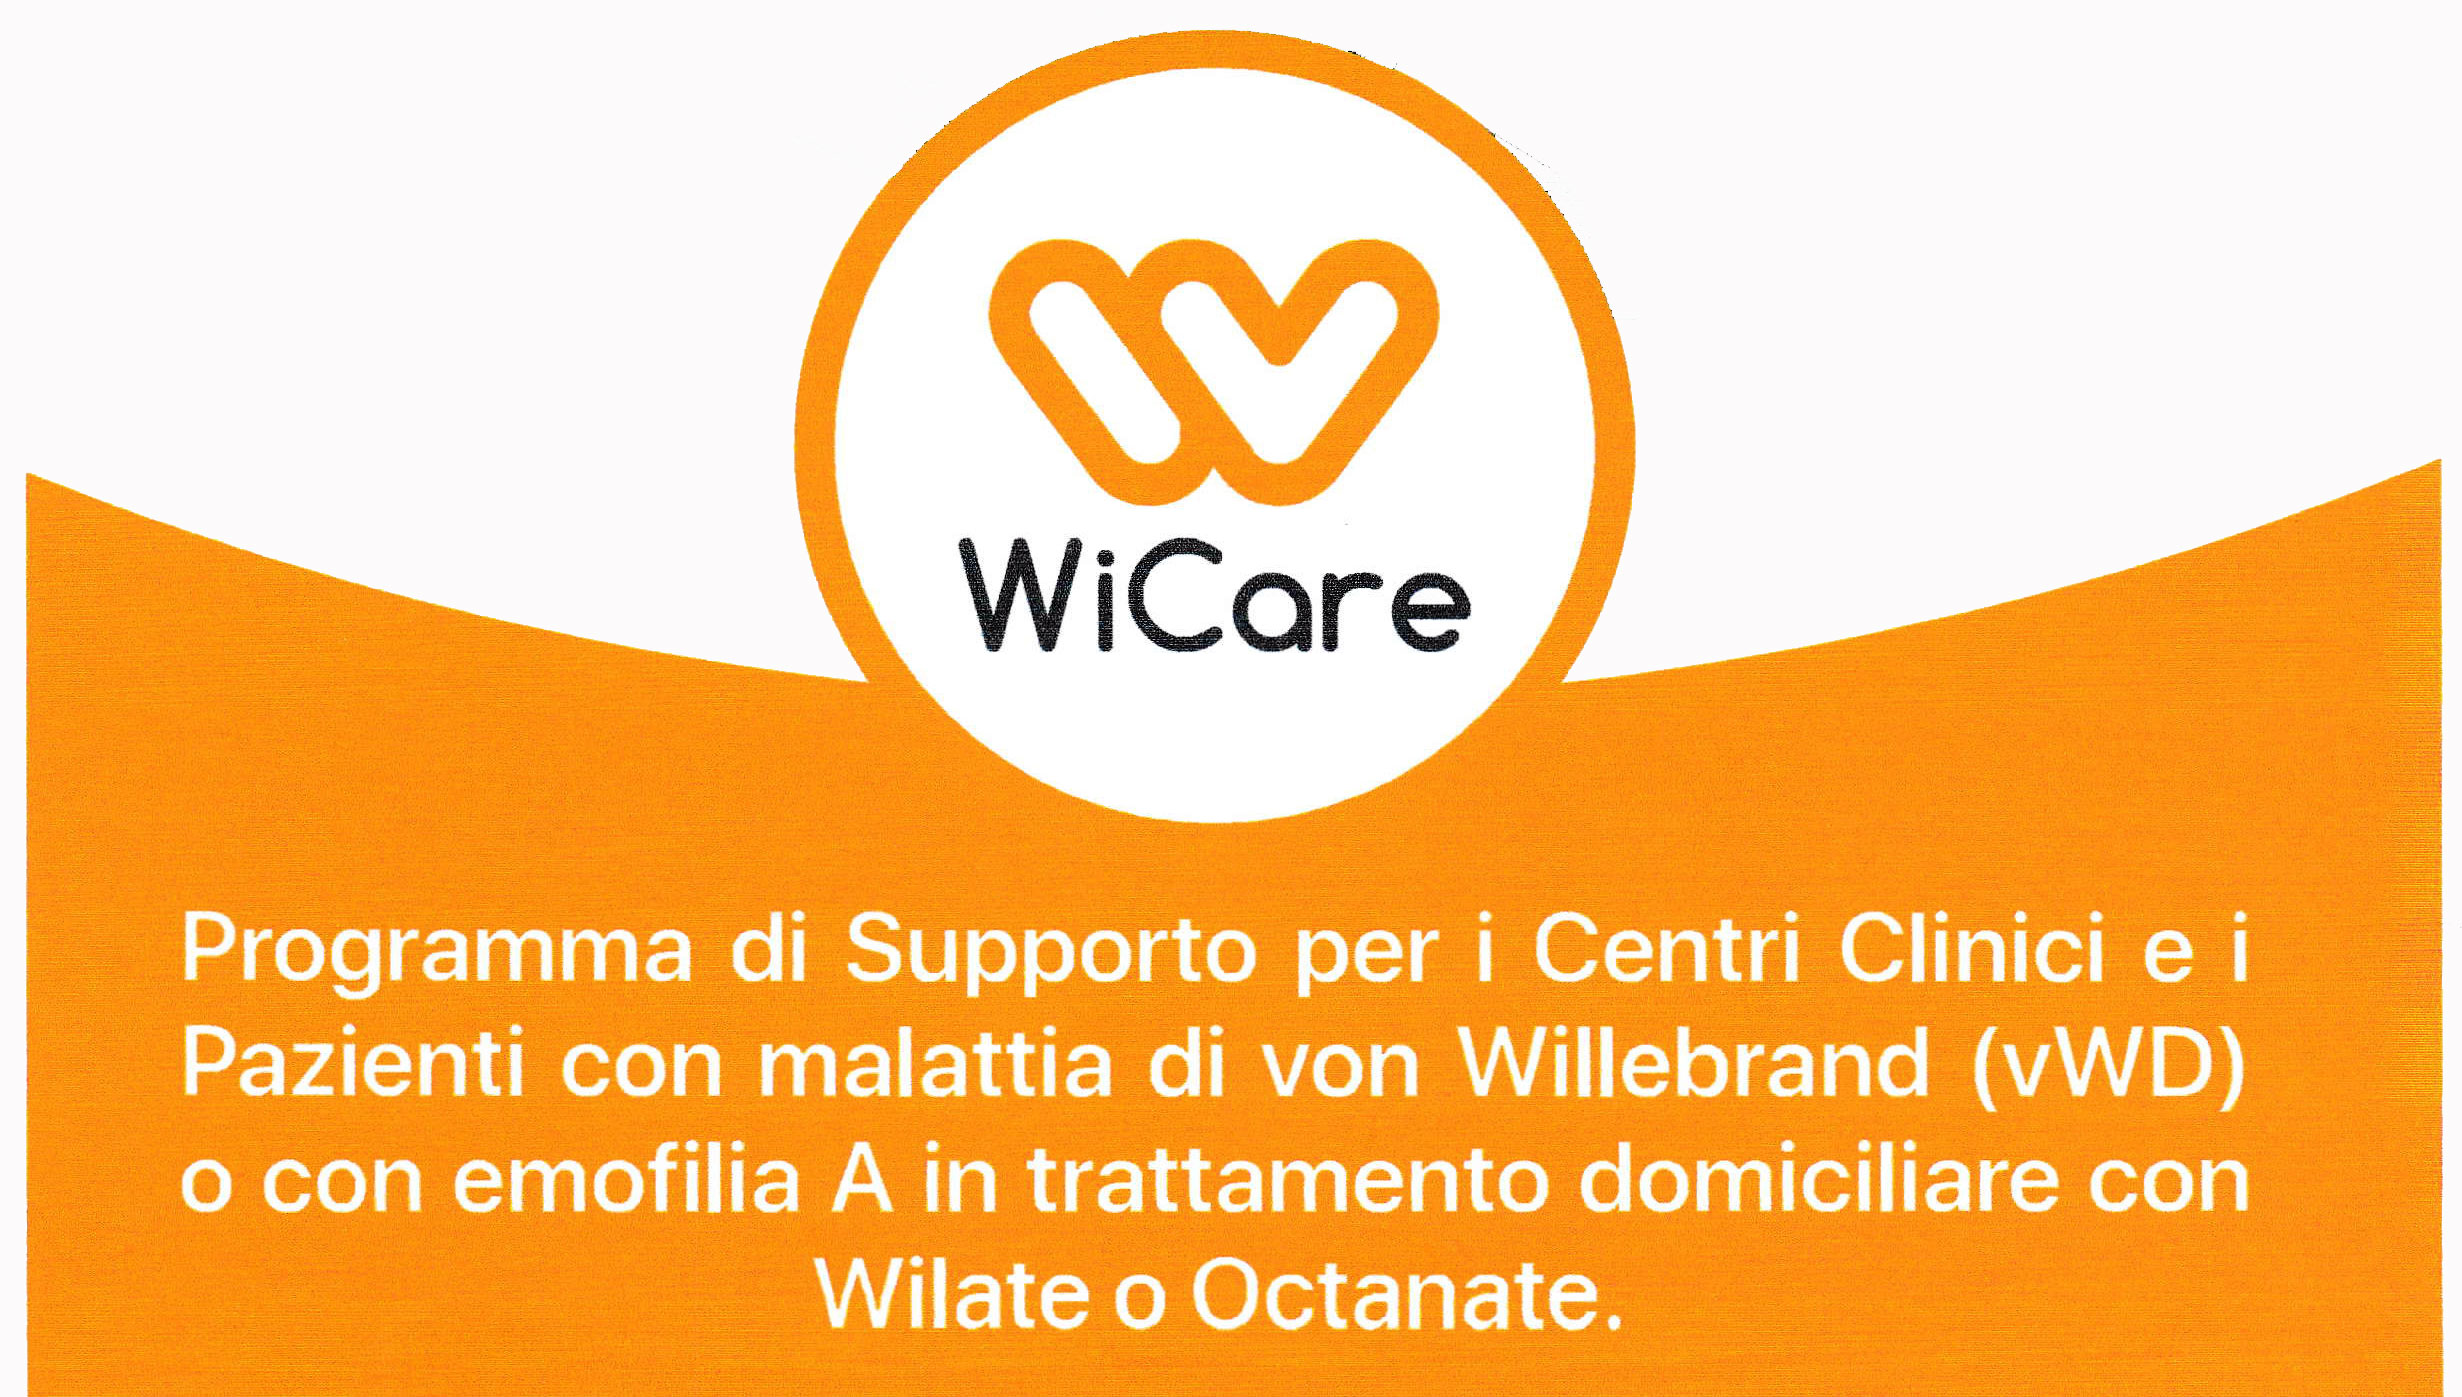 Octapharma Italy lancia il progetto WiCare